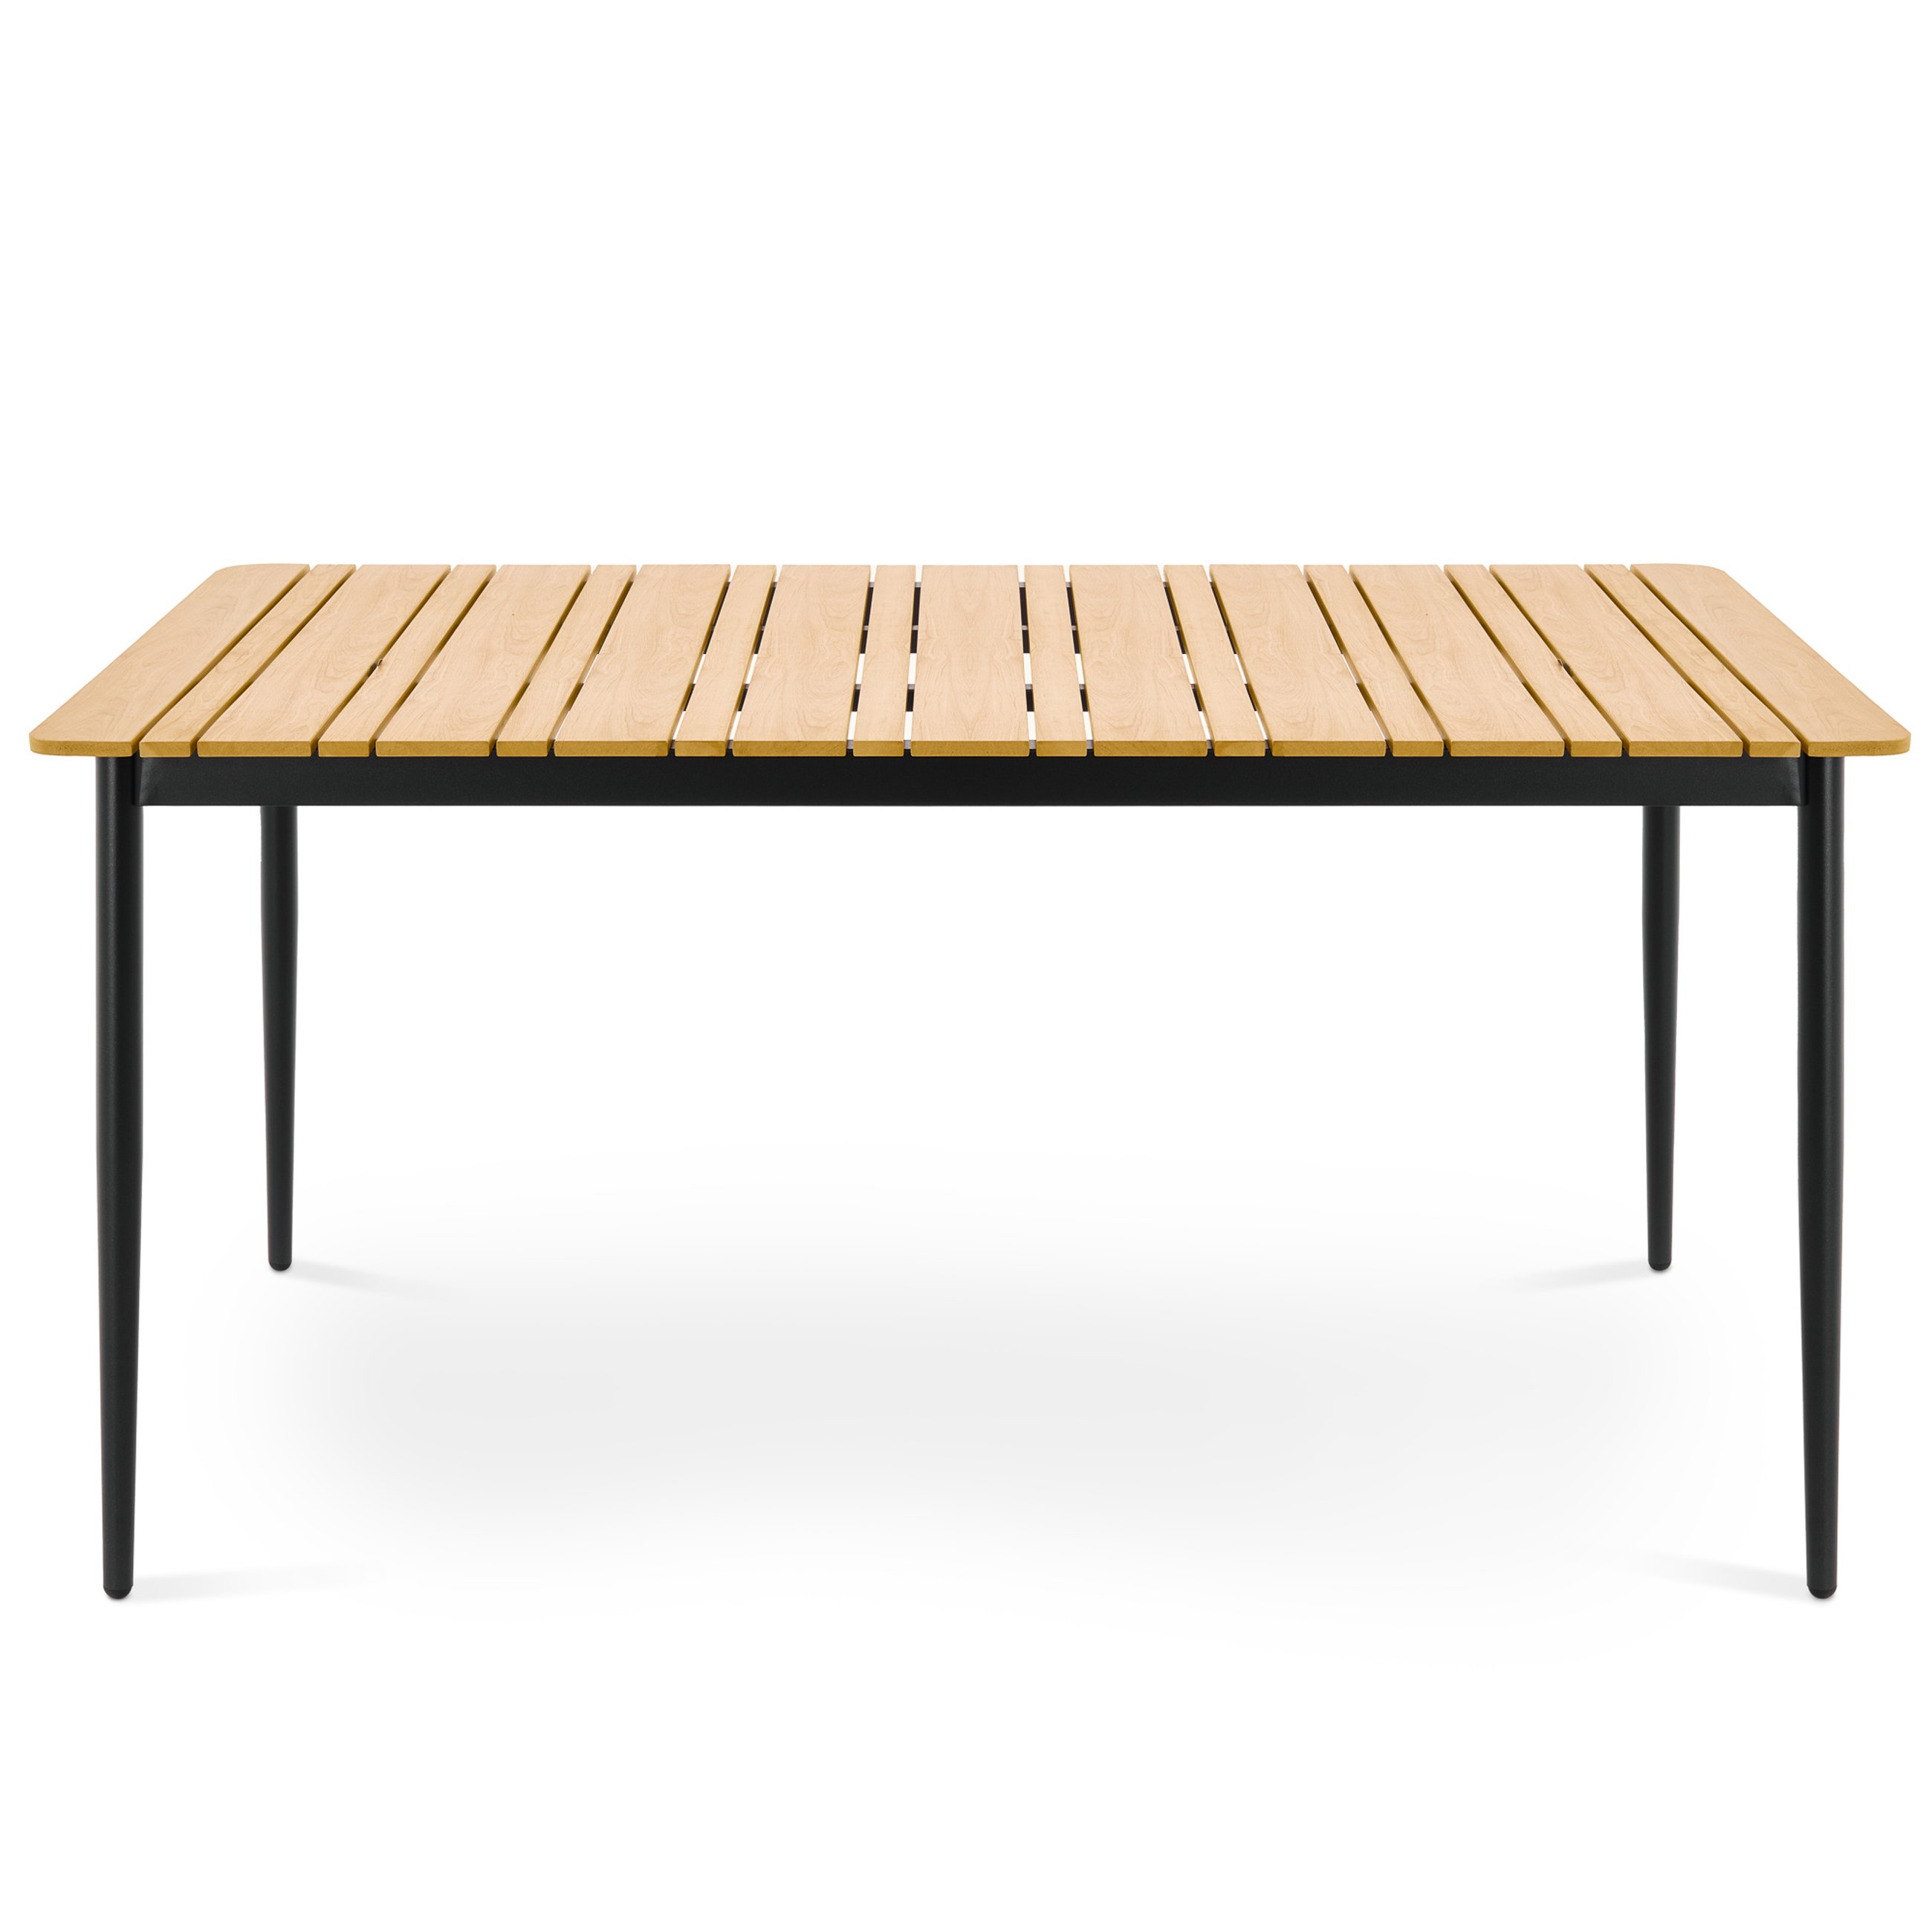 Konstrukcja stołu ogrodowego Nardo do volio wykonana jest z aluminium